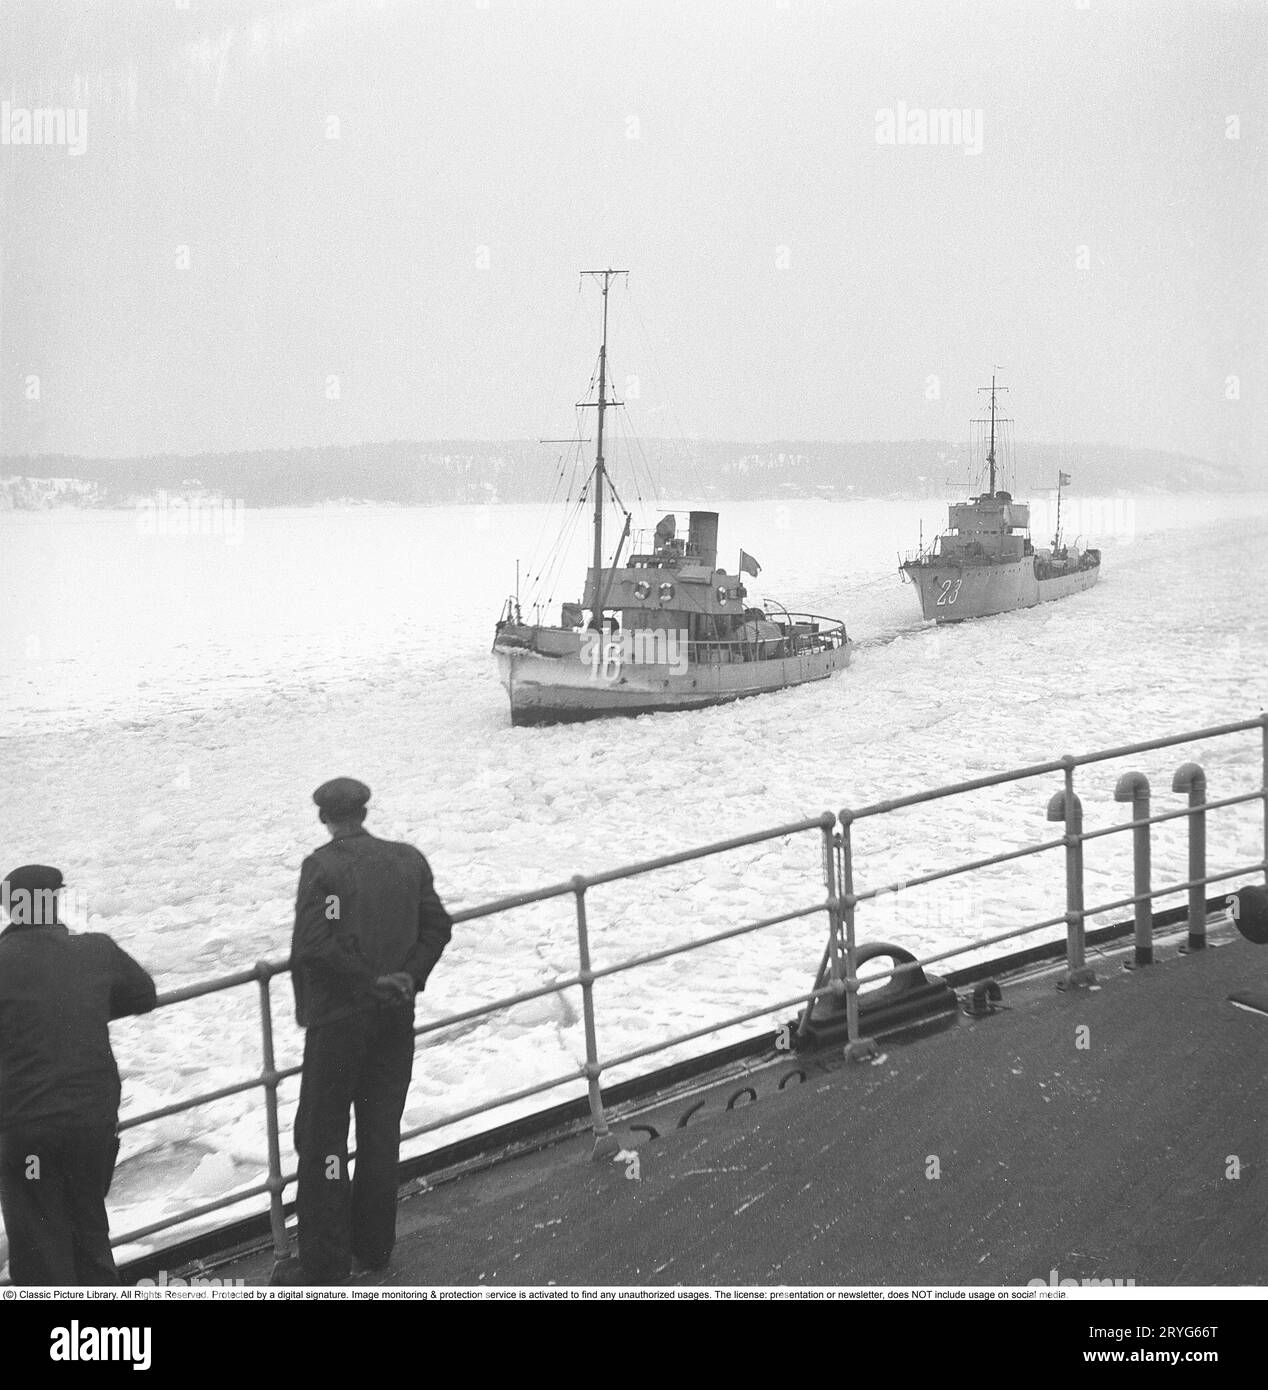 Winter auf See in den 1940er Jahren Abgebildete Besatzungsmitglieder des schwedischen Eisbrechers Ymer brechen im februar 1941 das Eis in den Binnengewässern der schwedischen Küste. Zwei Marineschiffe passieren den Eiskanal, der sich hinter dem Eisbrecher bildet. Der Eisbrecher Ymer wurde 1931-1933 in Malmö gebaut und diente 44 Jahre lang als Eisbrecher, bis er 1976 verkauft und verschrottet wurde. Die Winter während des Zweiten Weltkriegs waren oft außergewöhnlich kalt und das Eis wurde zu einem großen Problem für die Schifffahrt und das Militär. Ymer war der erste große Meereisbrecher, der einen Dieselantrieb verwendete Stockfoto